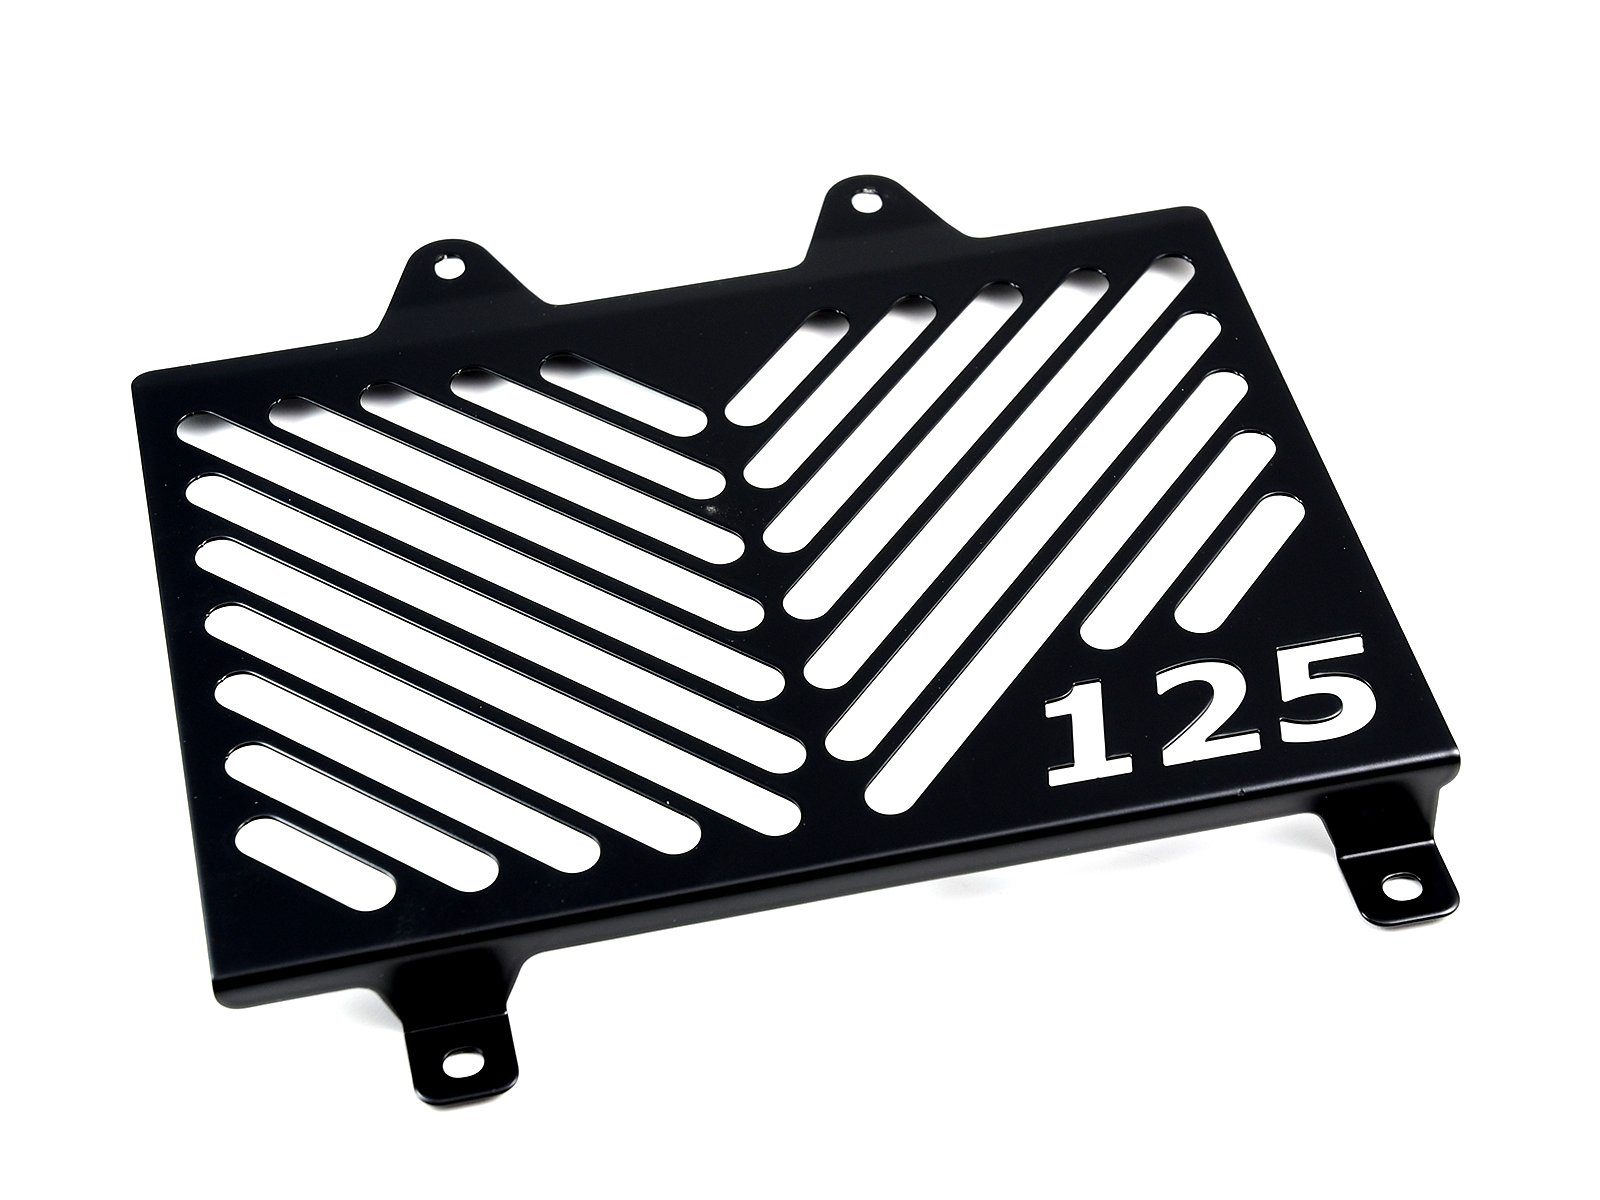 ZIEGER Motorrad-Additiv Kühlerabdeckung für KTM 125 Duke Logo schwarz, Motorradkühlerabdeckung | Kraftstoffadditive